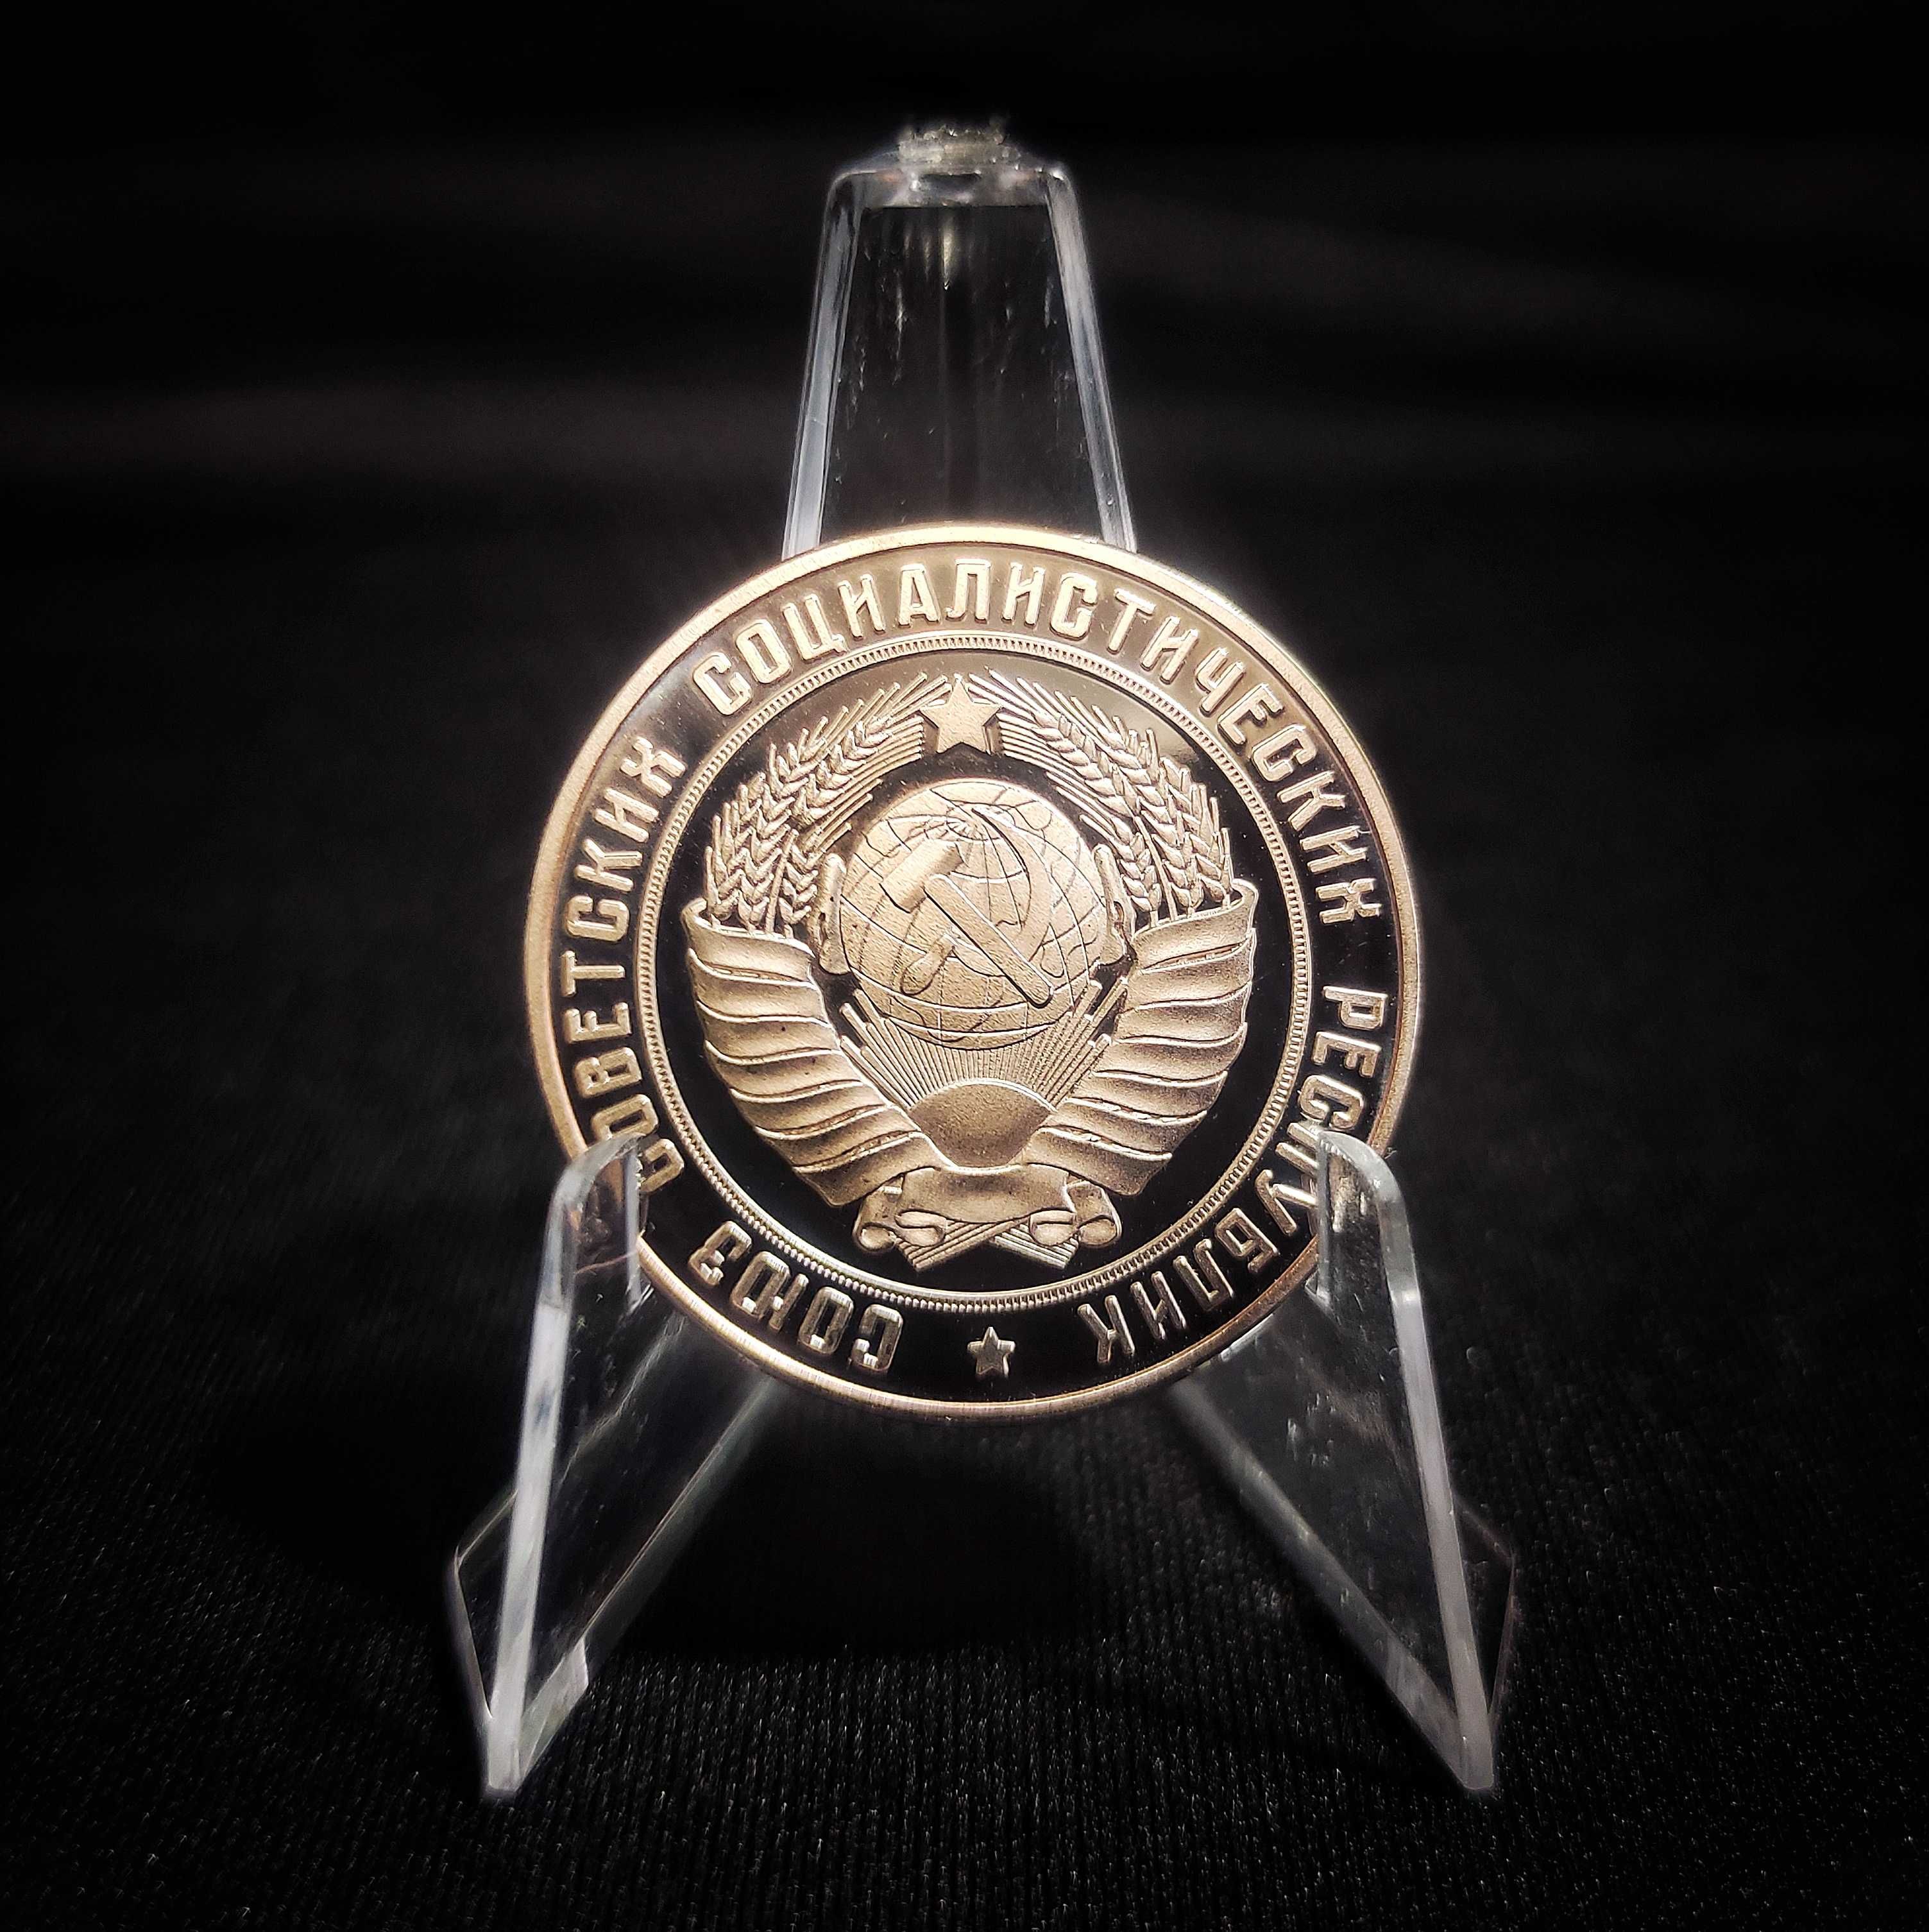 100 лет СССР - Подарочная Памятная Сувенирная Медаль